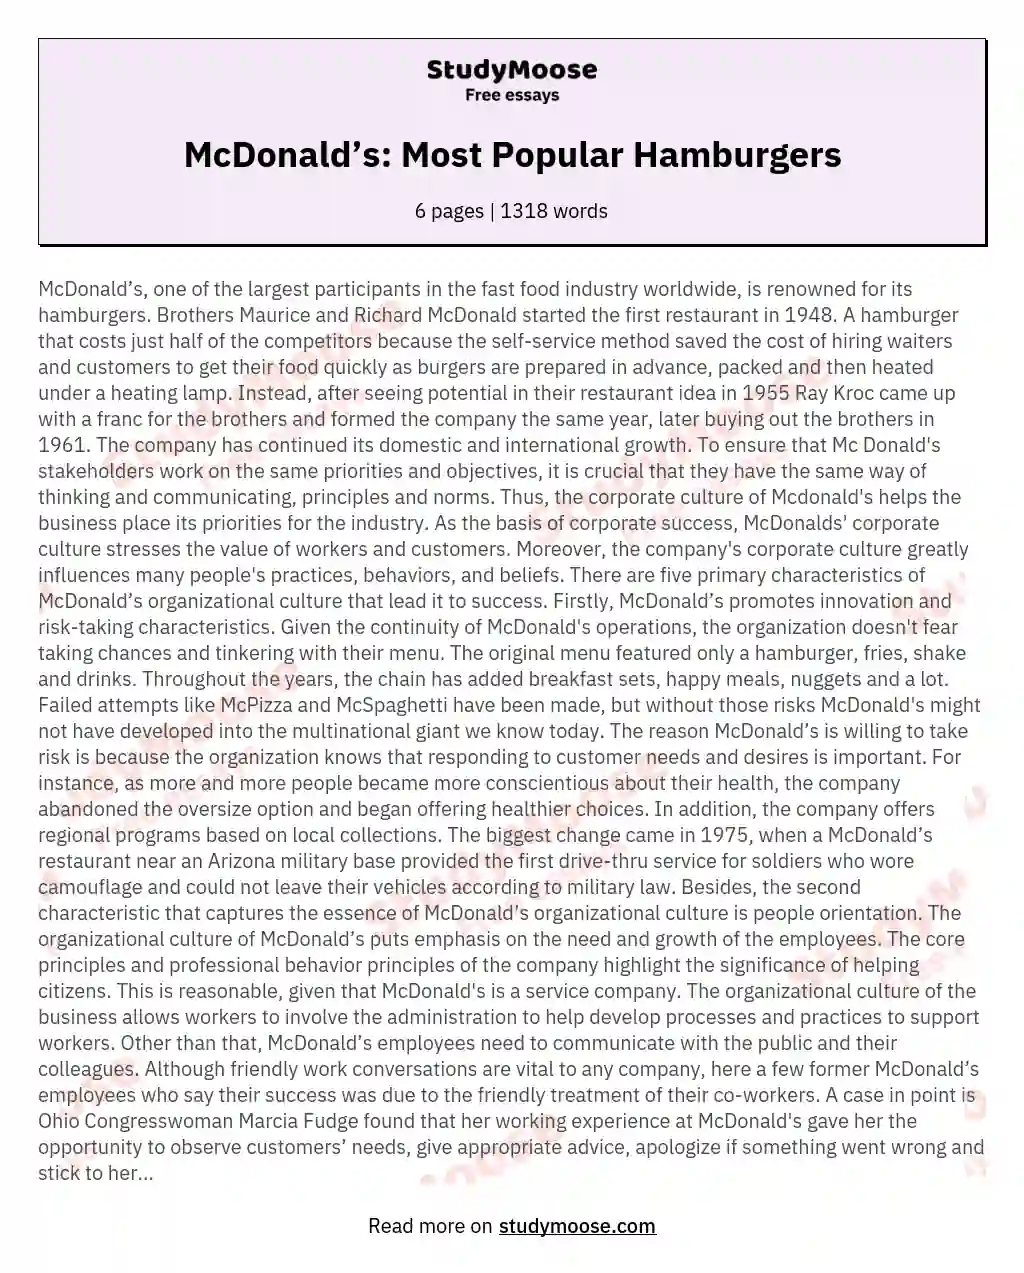 McDonald’s: Most Popular Hamburgers essay